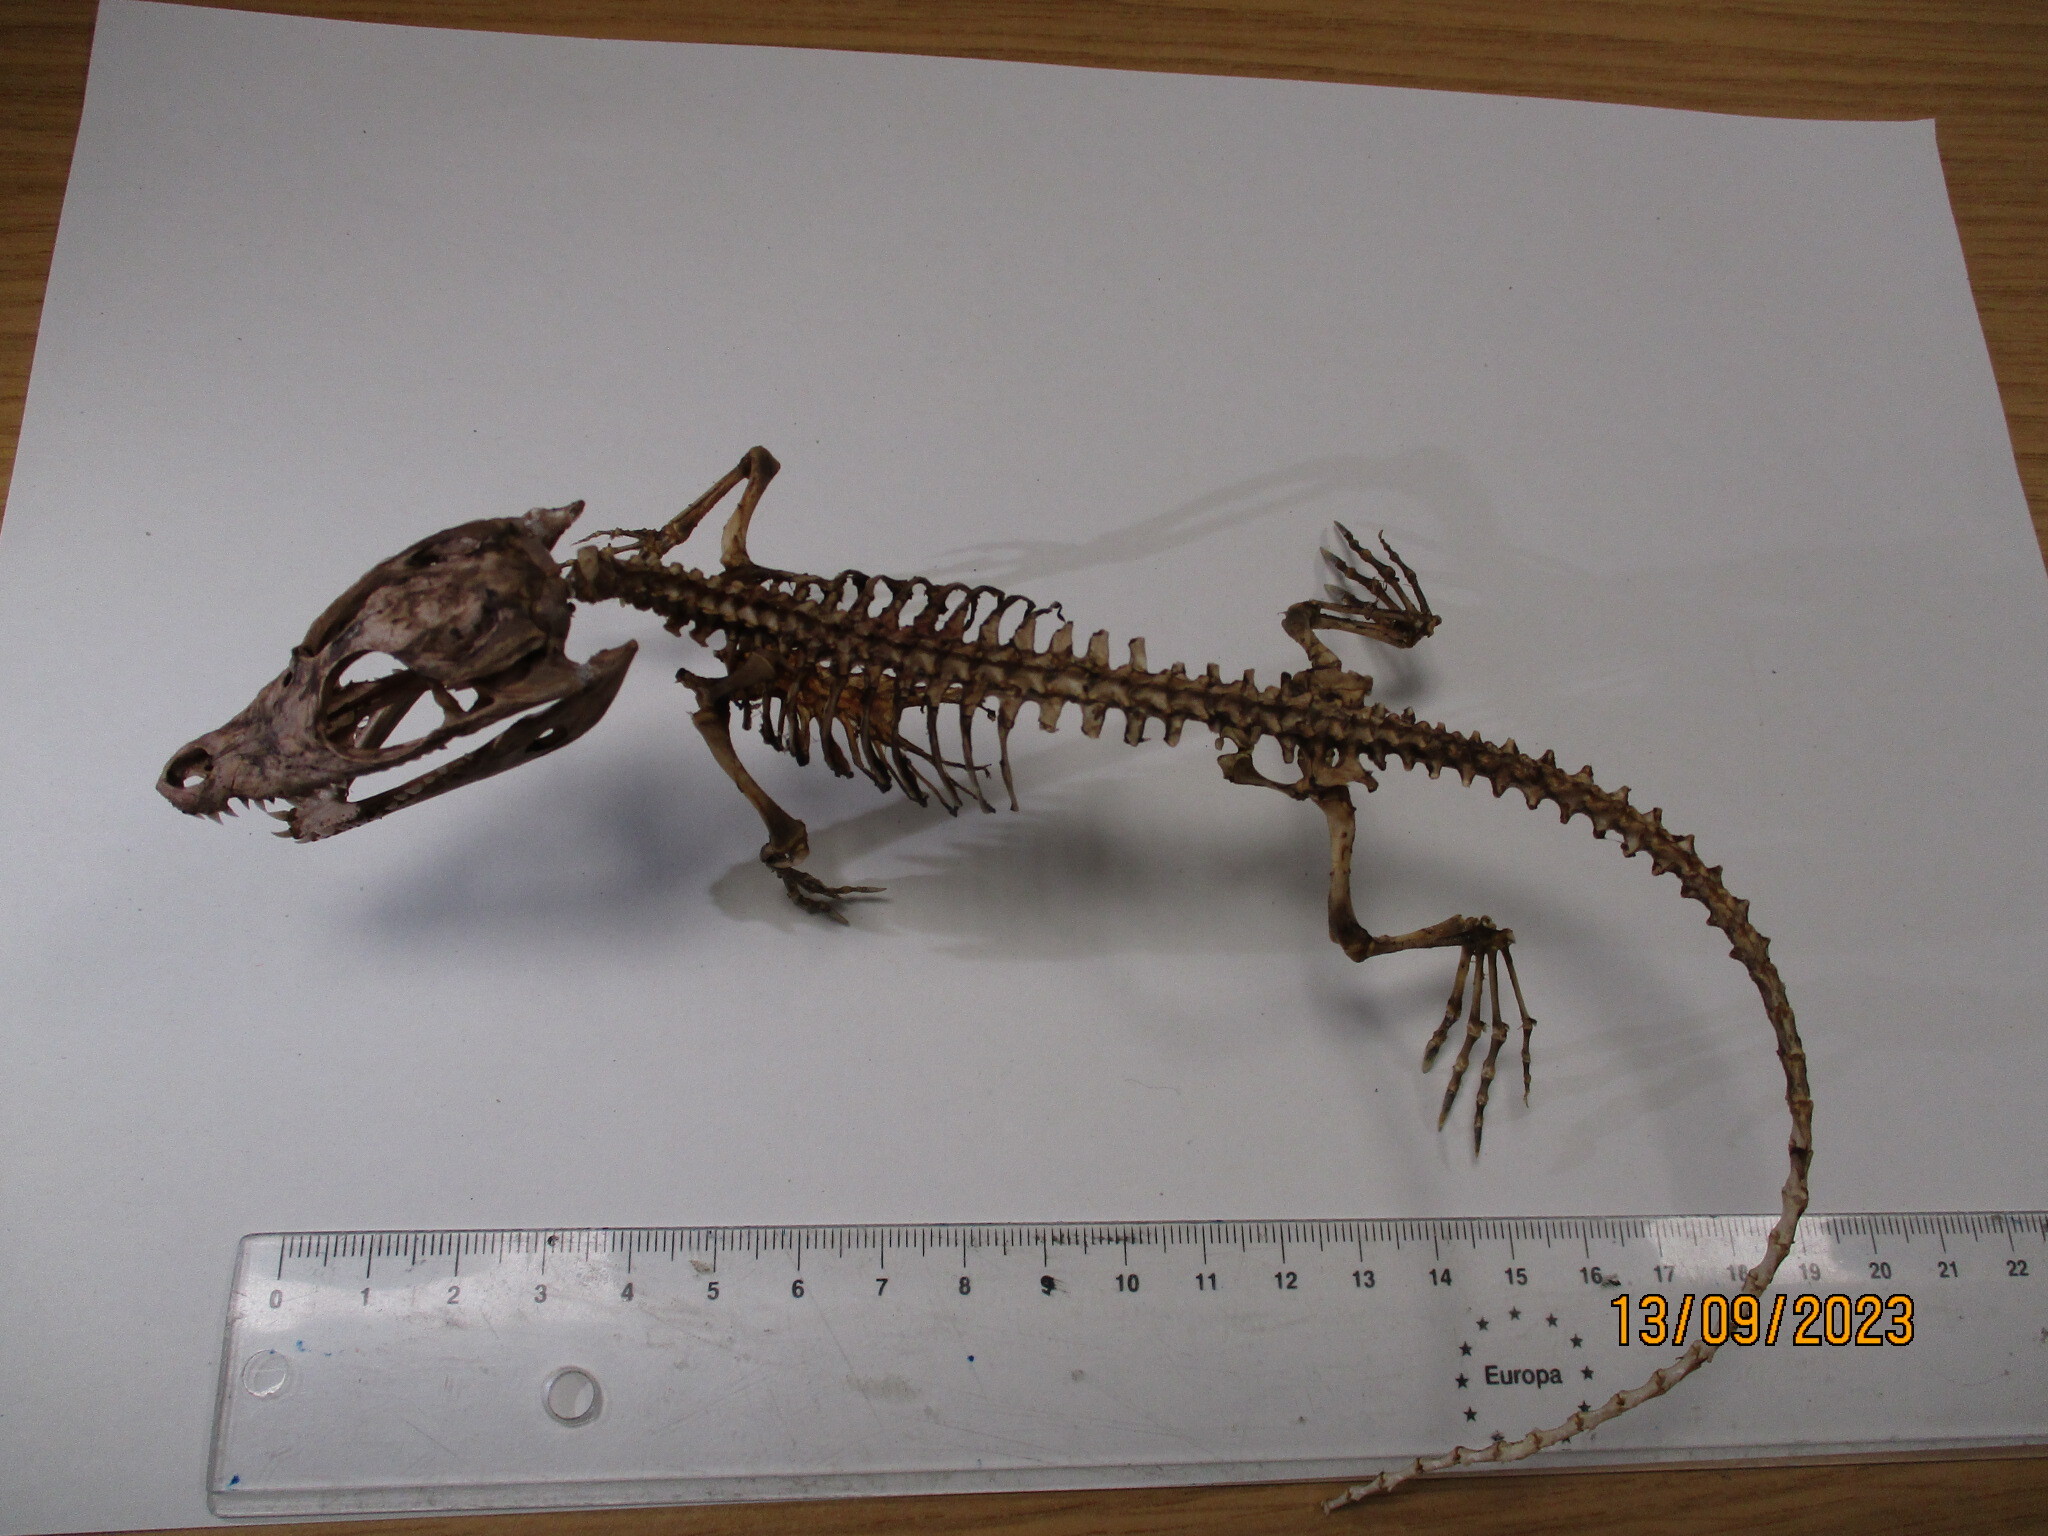 Krokodil-Skelett in Paket aus Russland gefunden und beschlagnahmt